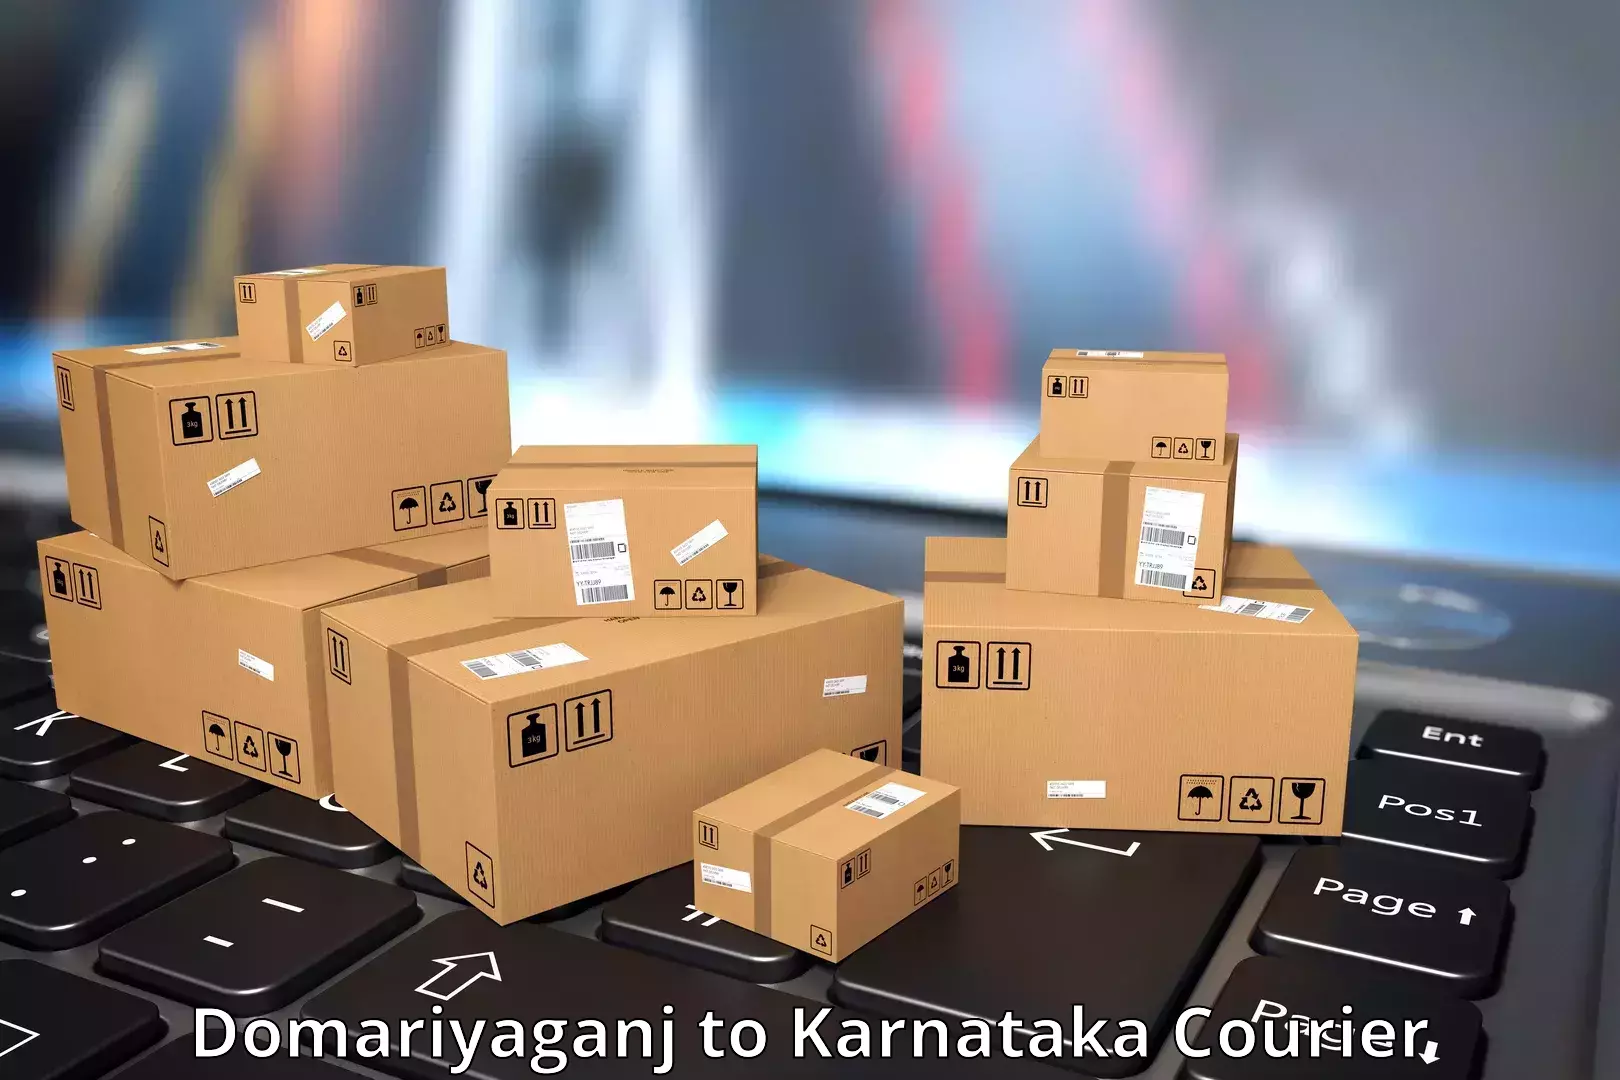 Enhanced tracking features Domariyaganj to Kanjarakatte